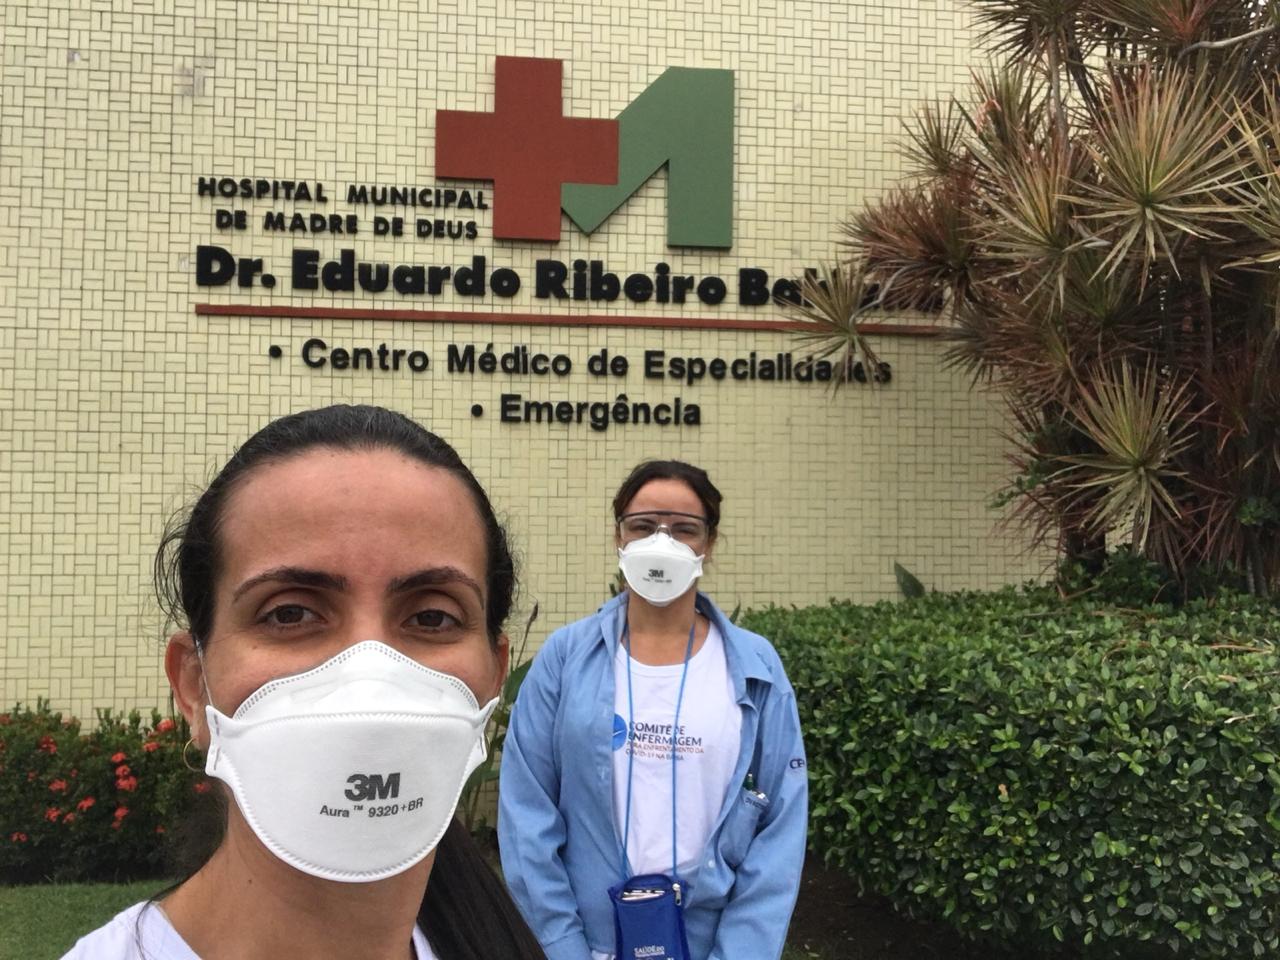 Comitê de Enfermagem visita Hospital Municipal Dr. Eduardo Ribeiro Bahiana